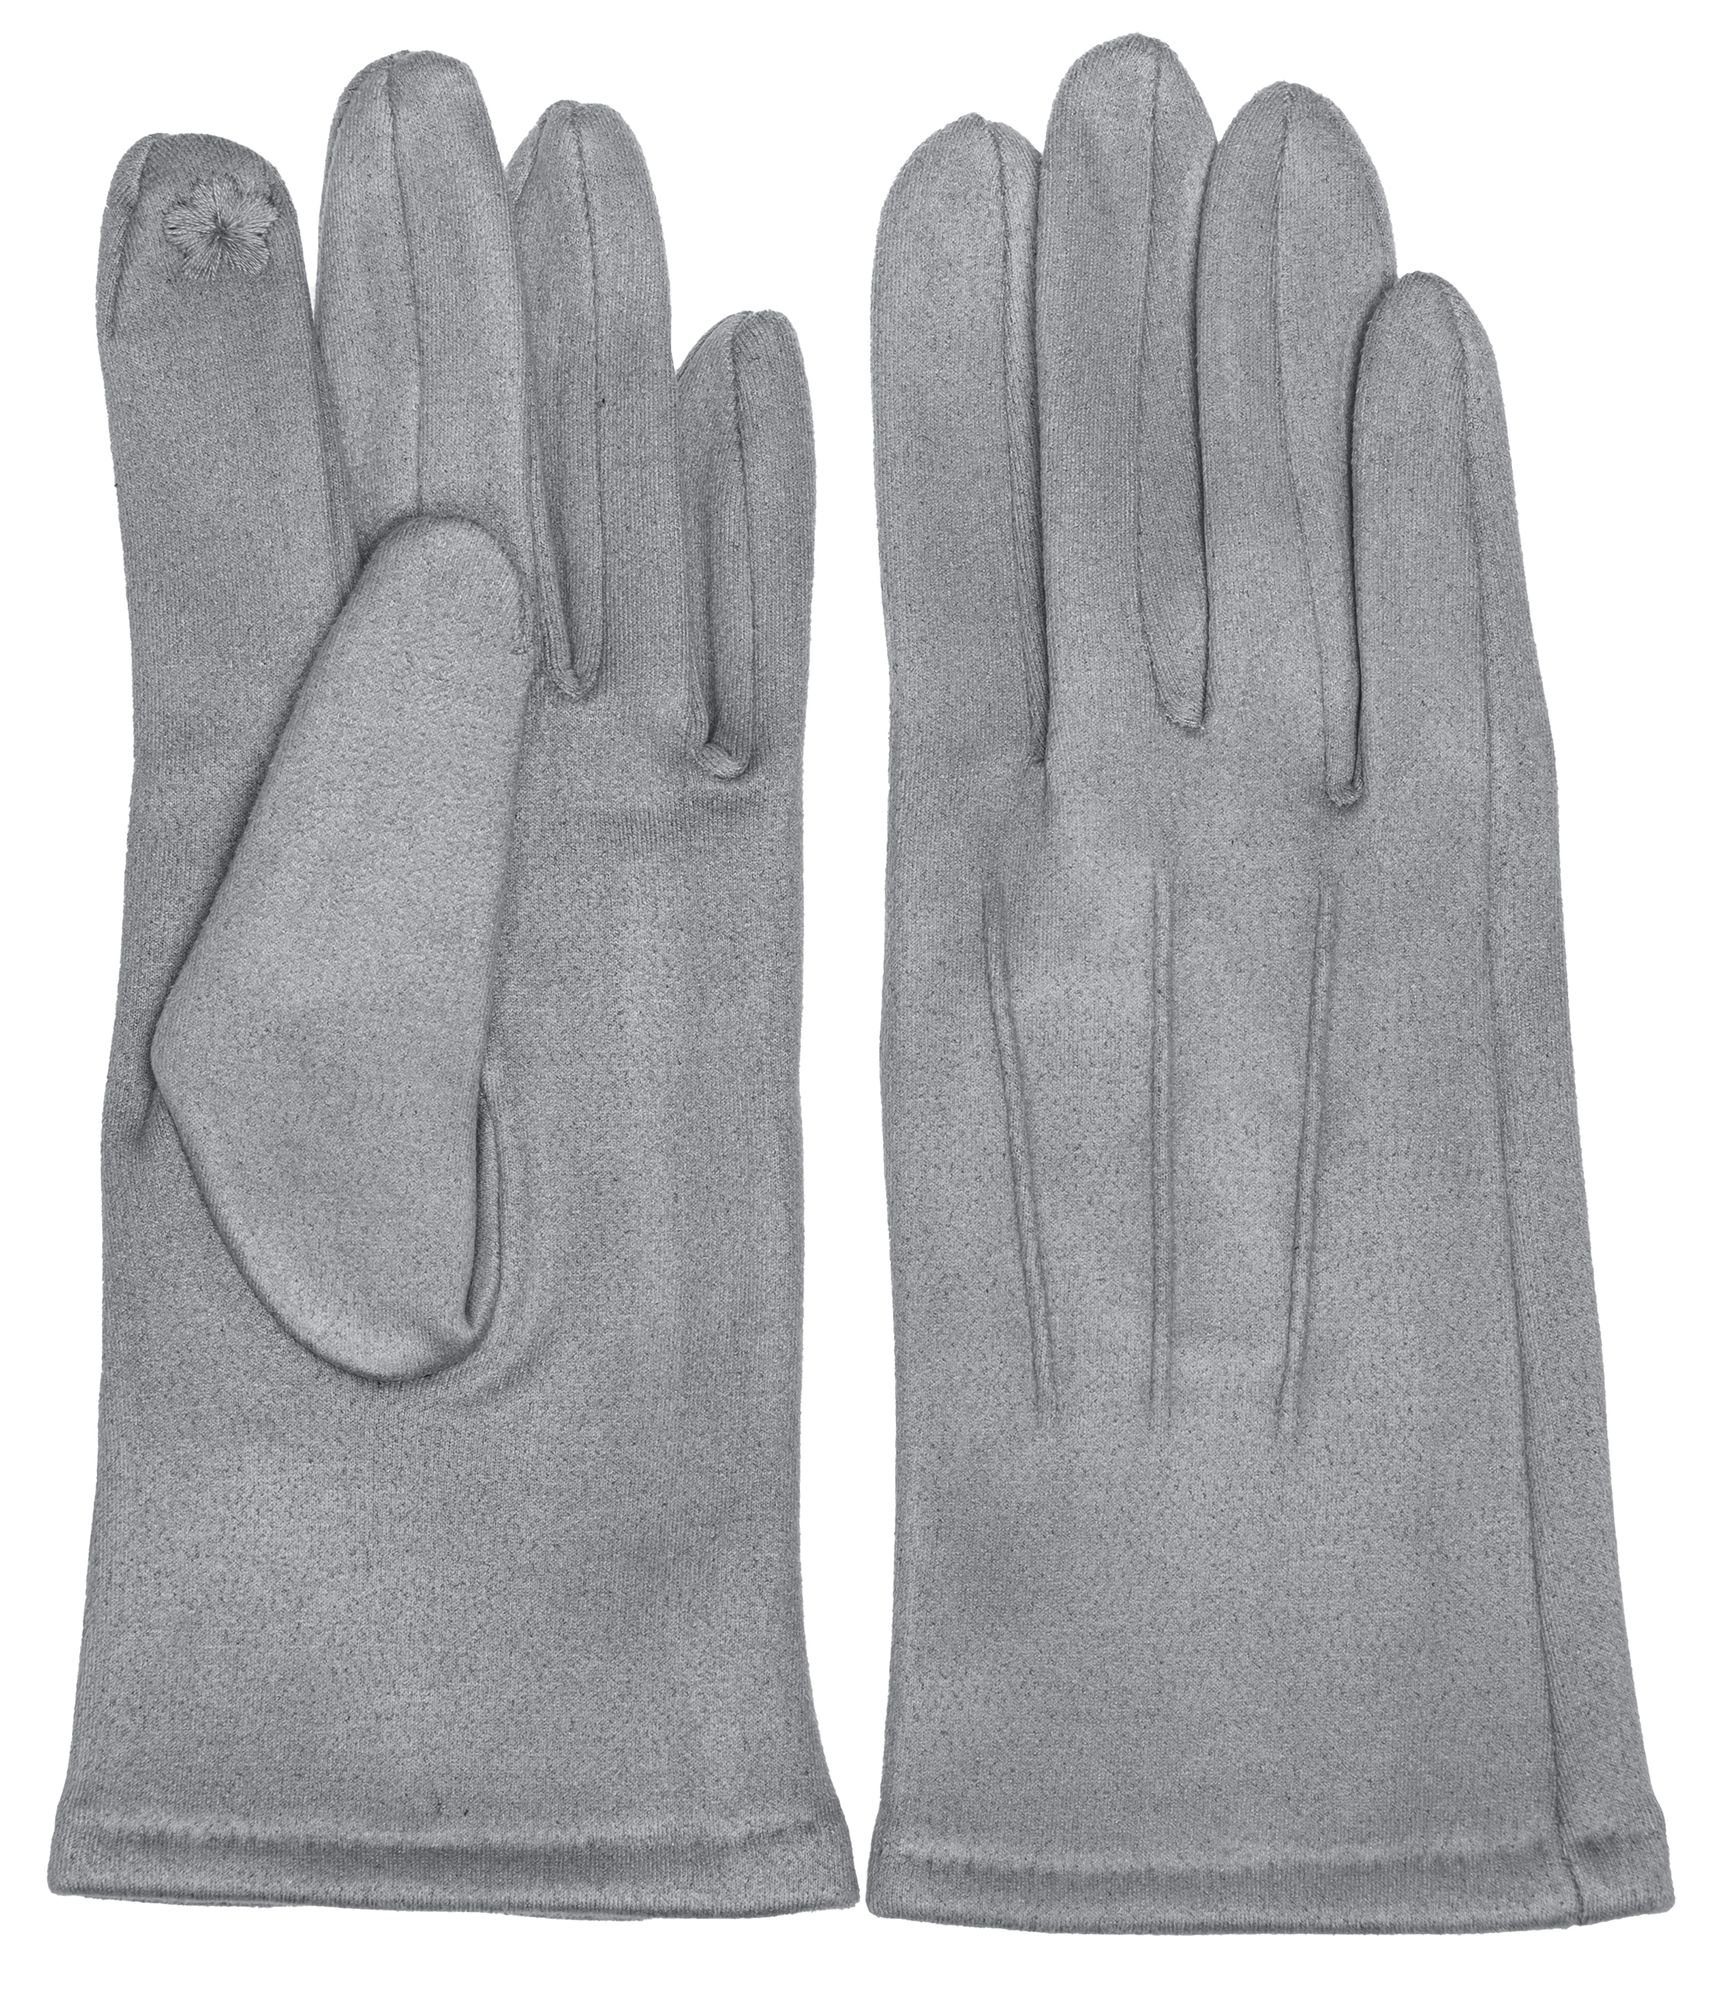 Caspar Strickhandschuhe GLV014 klassisch elegante uni Damen Handschuhe mit 3 Nähten hellgrau